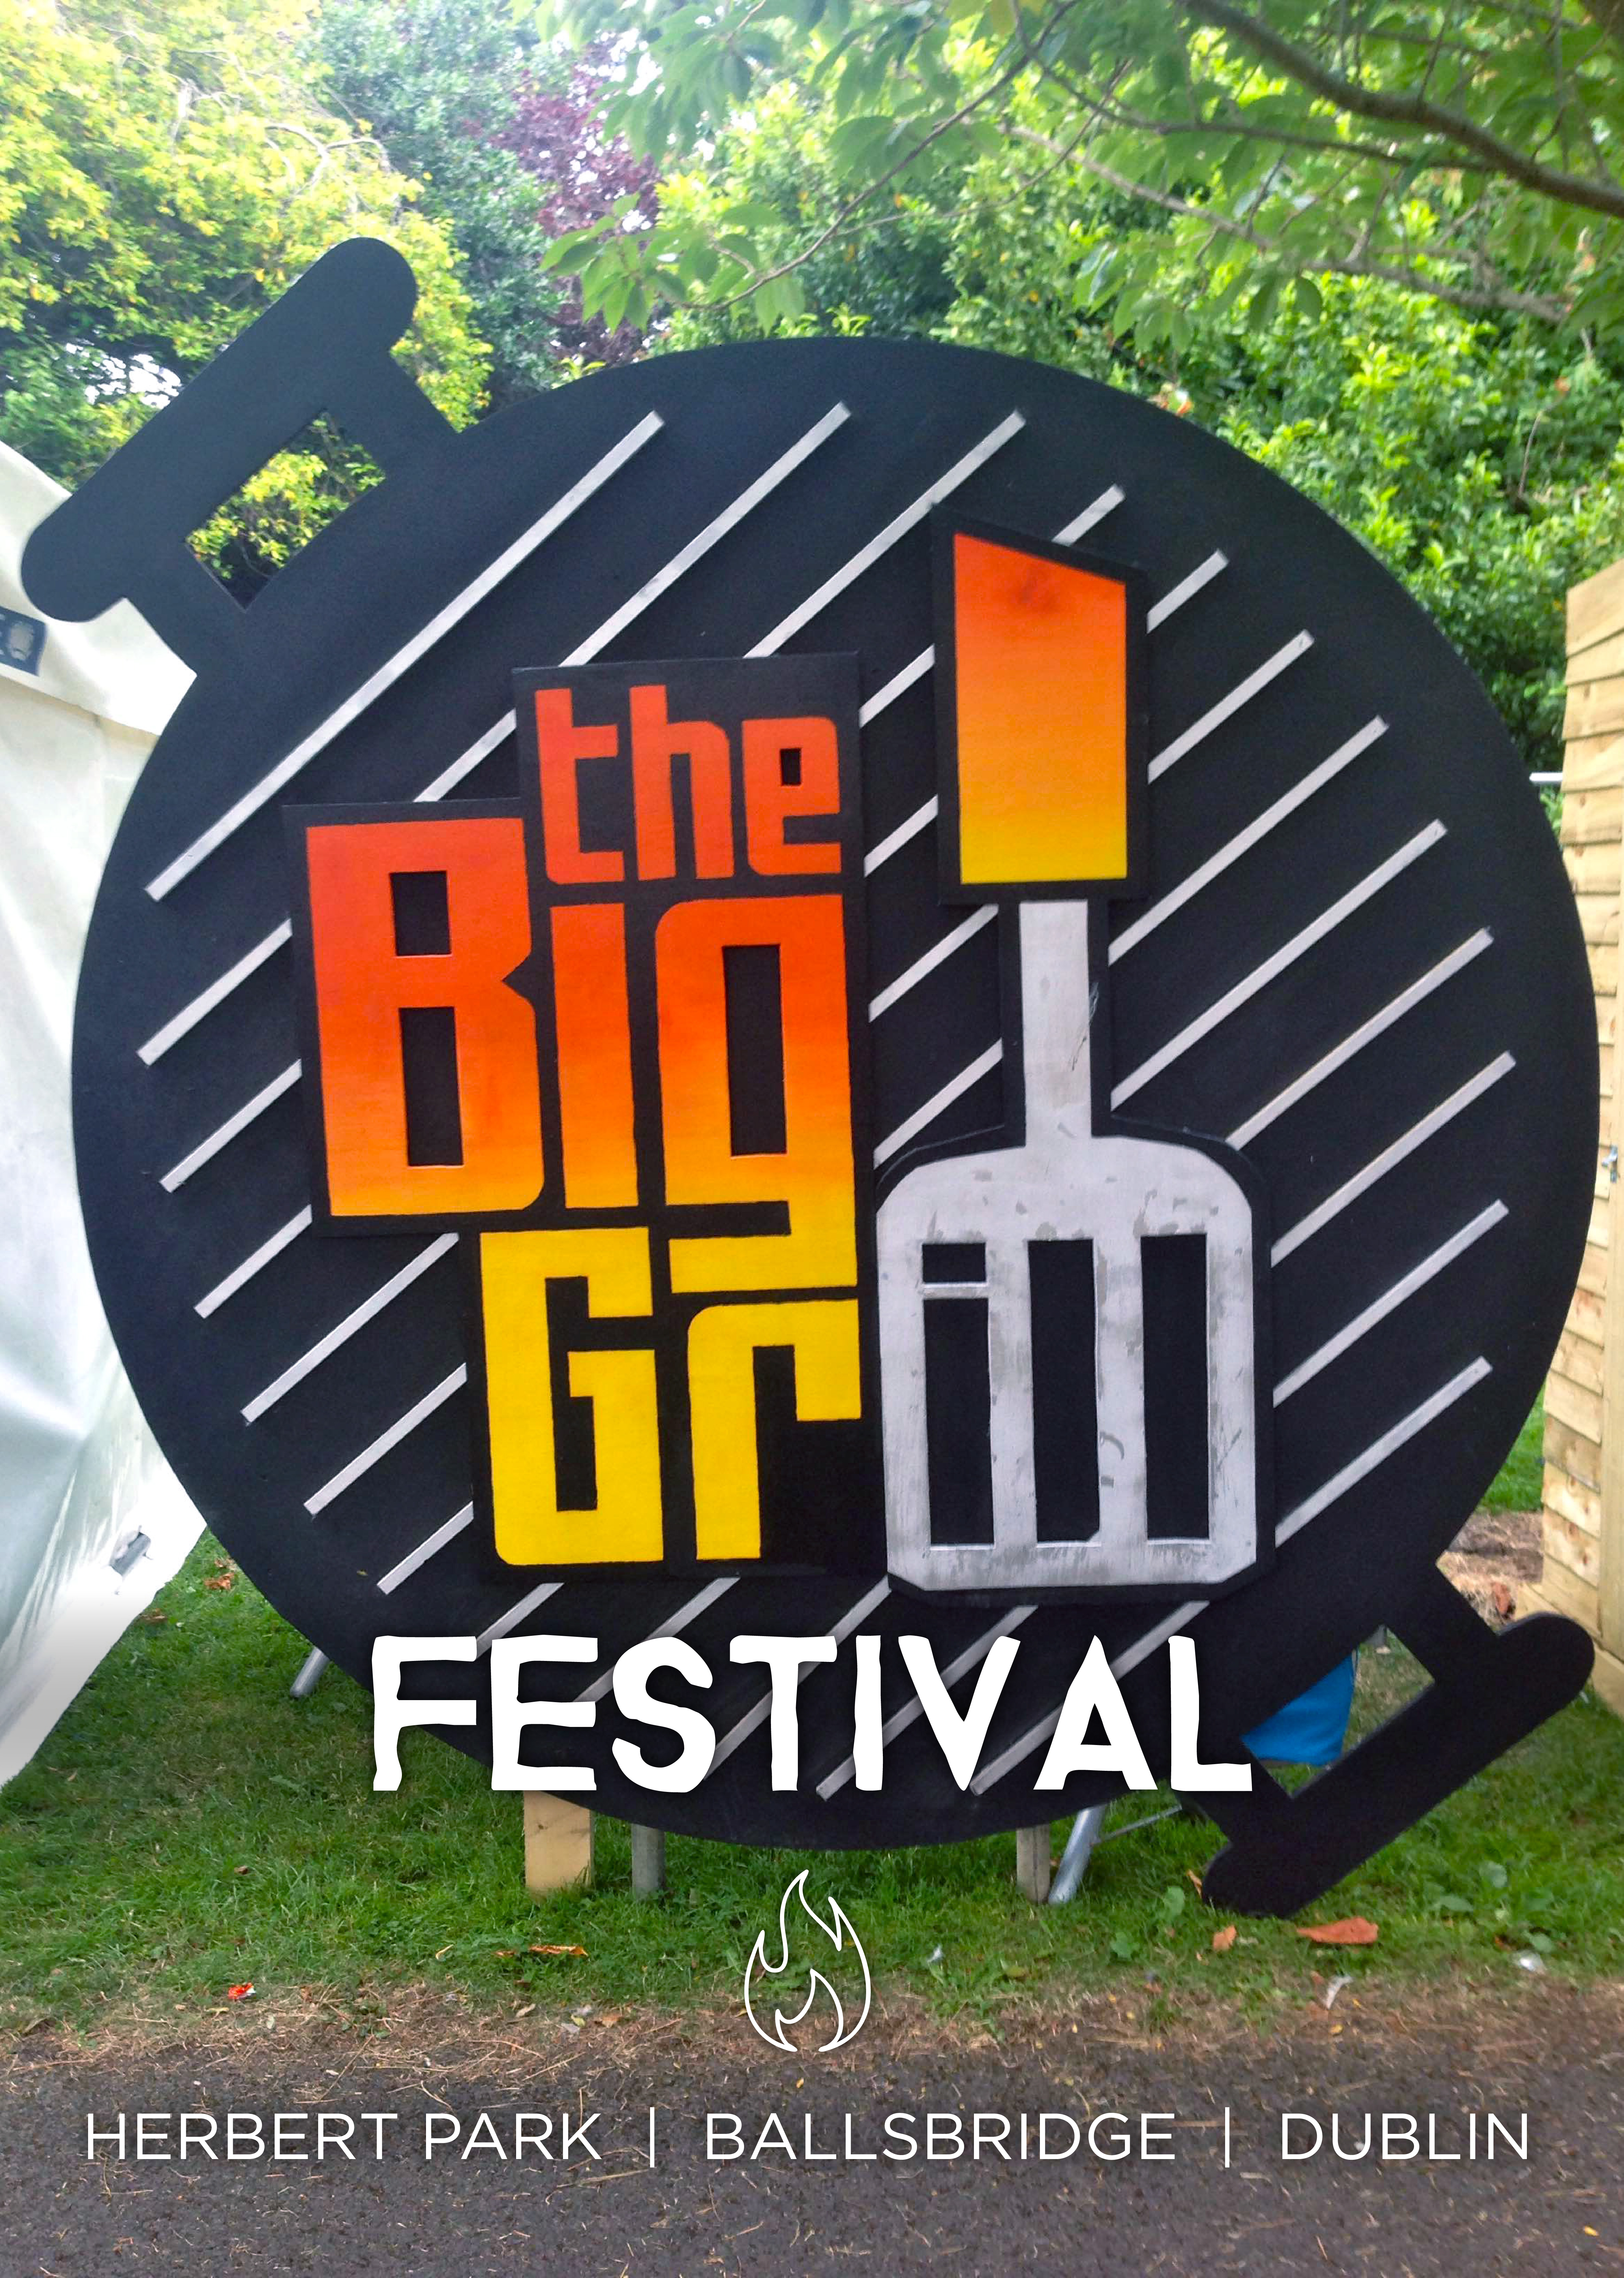 The Big Grill Festival